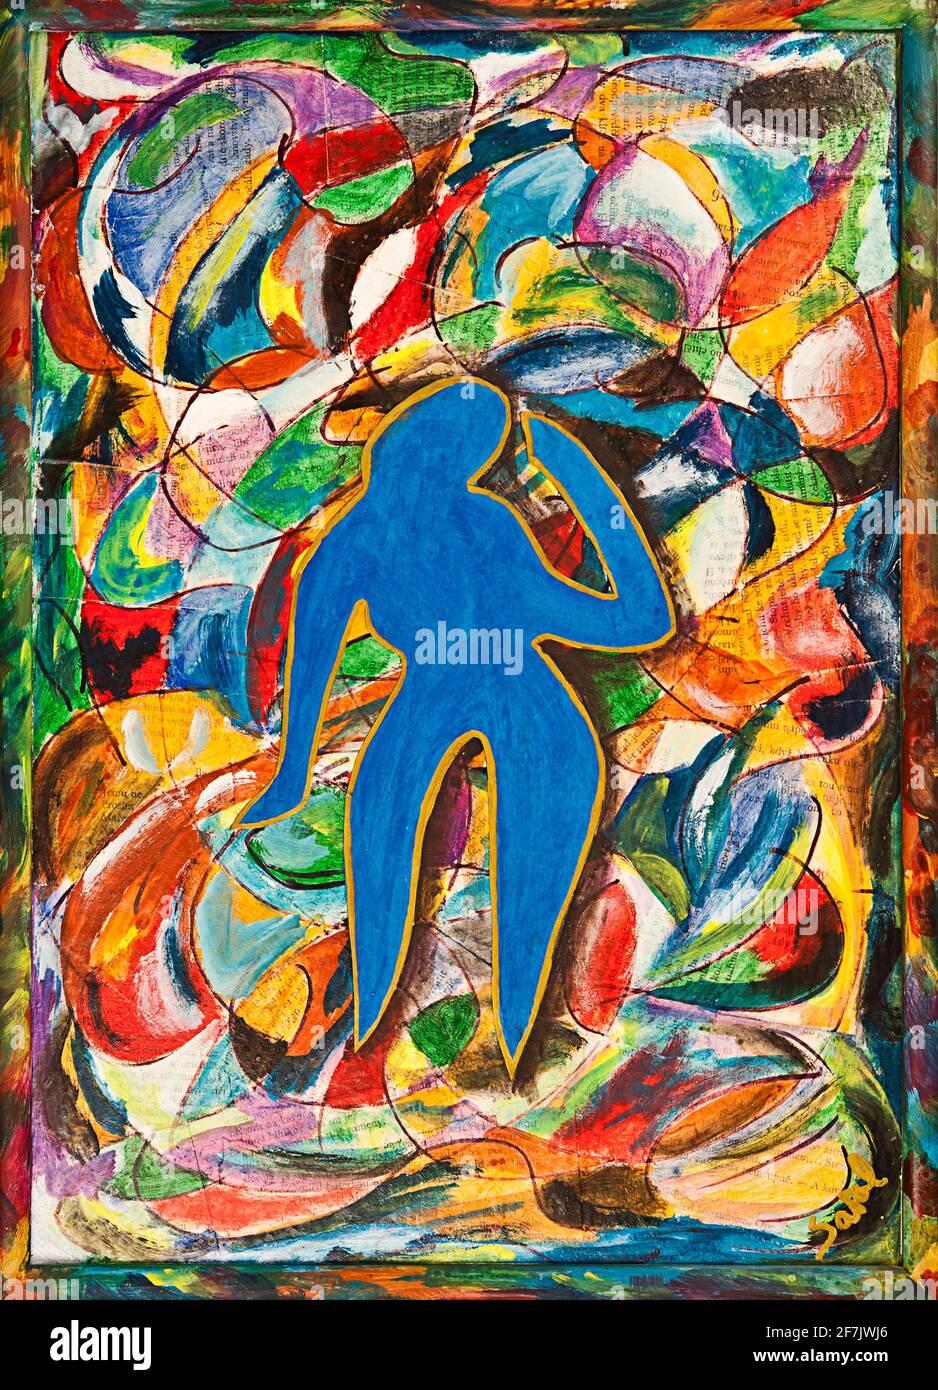 collage y acrílicos pintan sobre cartón como un homenaje a. Matisse  Fotografía de stock - Alamy